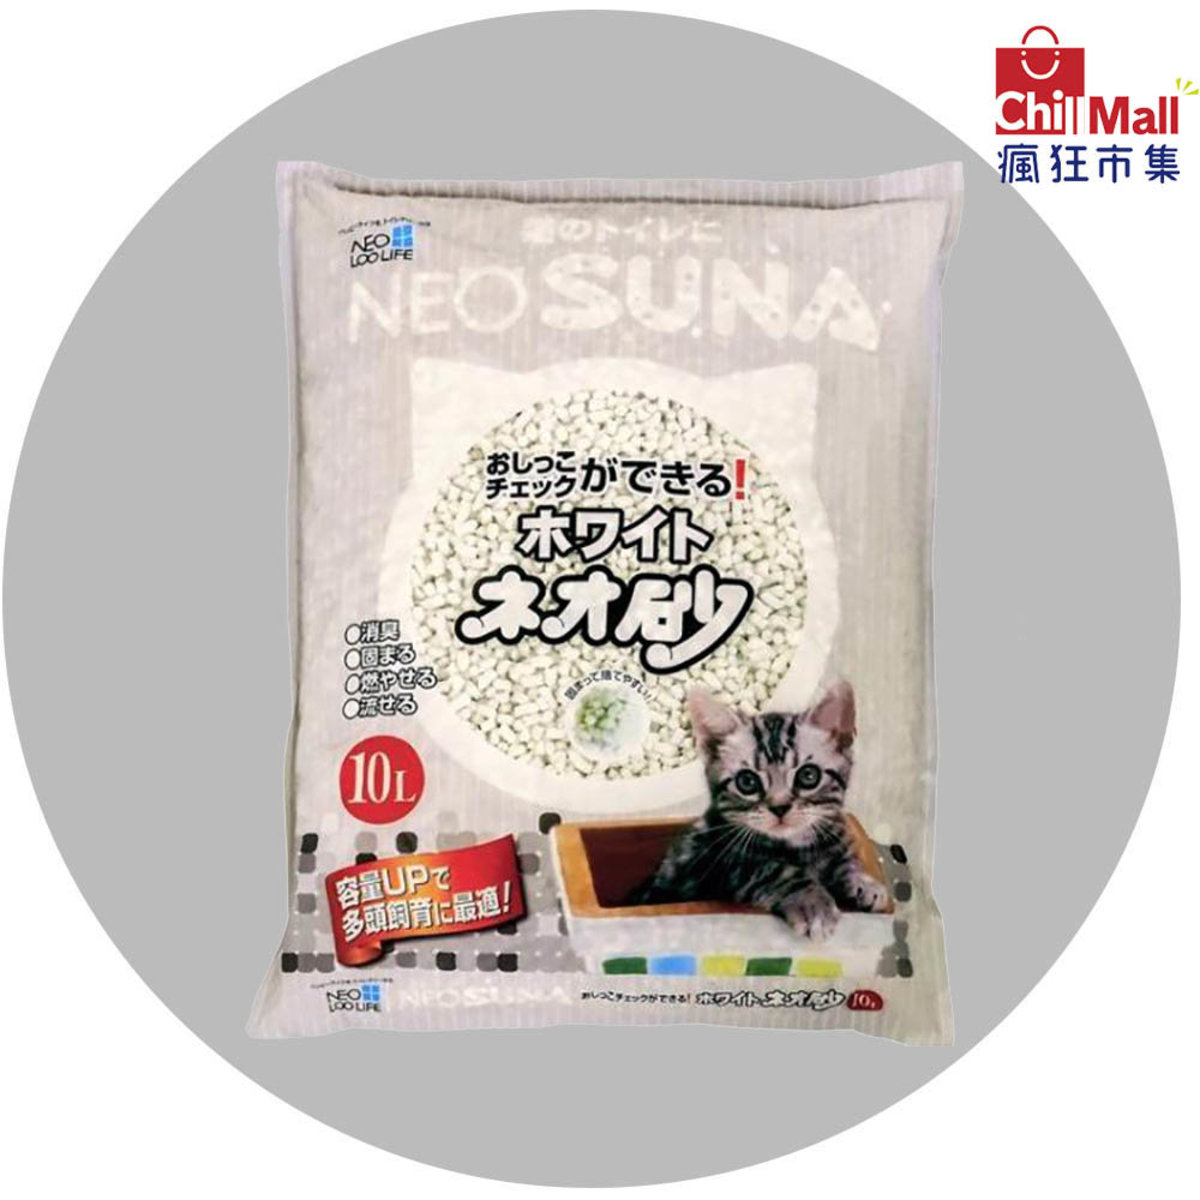 【紙貓砂】日本NEO SUNA白沙紙砂 10L (淺灰色) 6208899